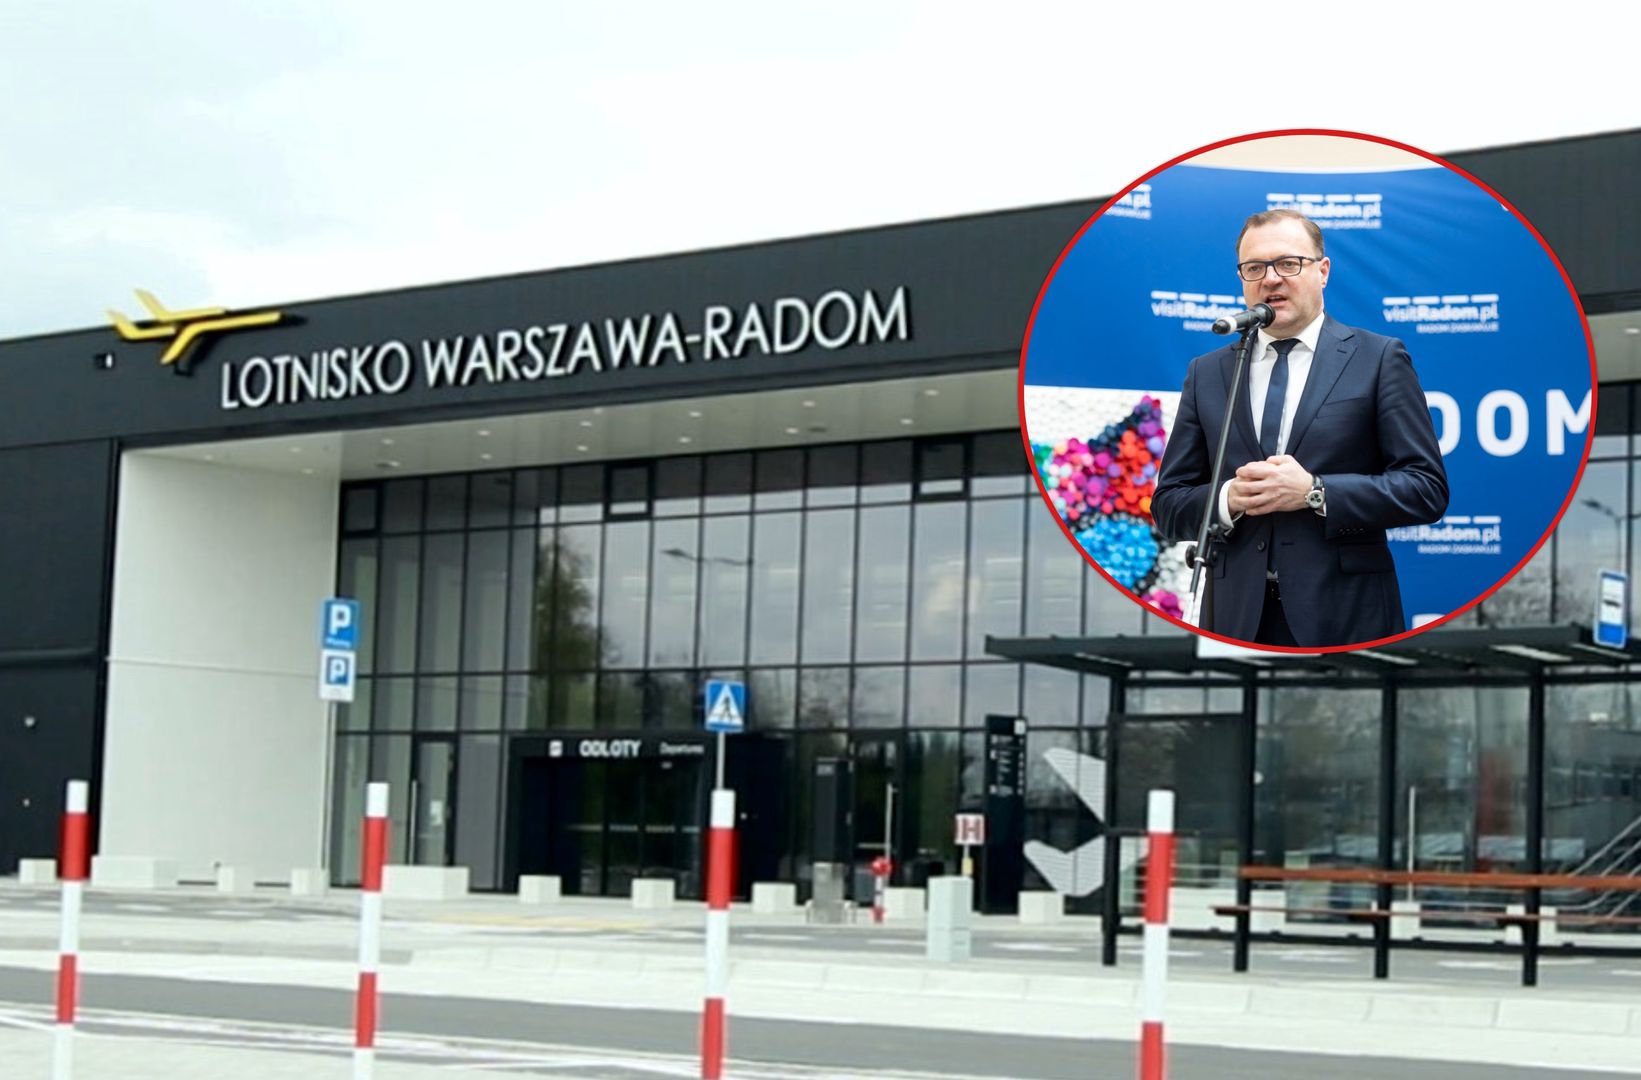 Cała Polska kpiła z lotniska w Radomiu. A po roku? "Nieporozumienie"